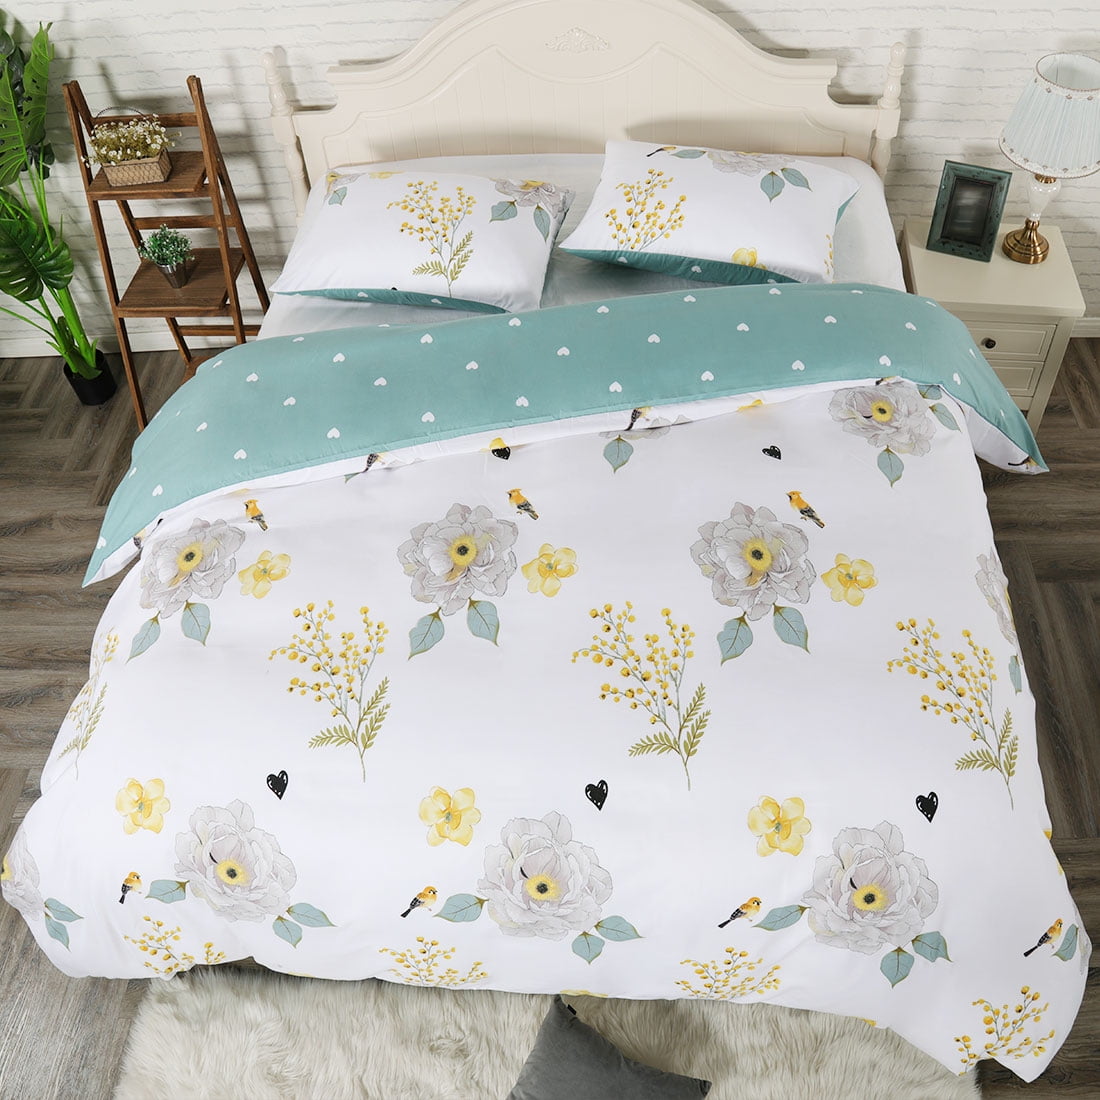 Details about   Sleeping Cover Blanket Comfy Floral Design Bed Sheet Soft Blankets Bed Comforter 